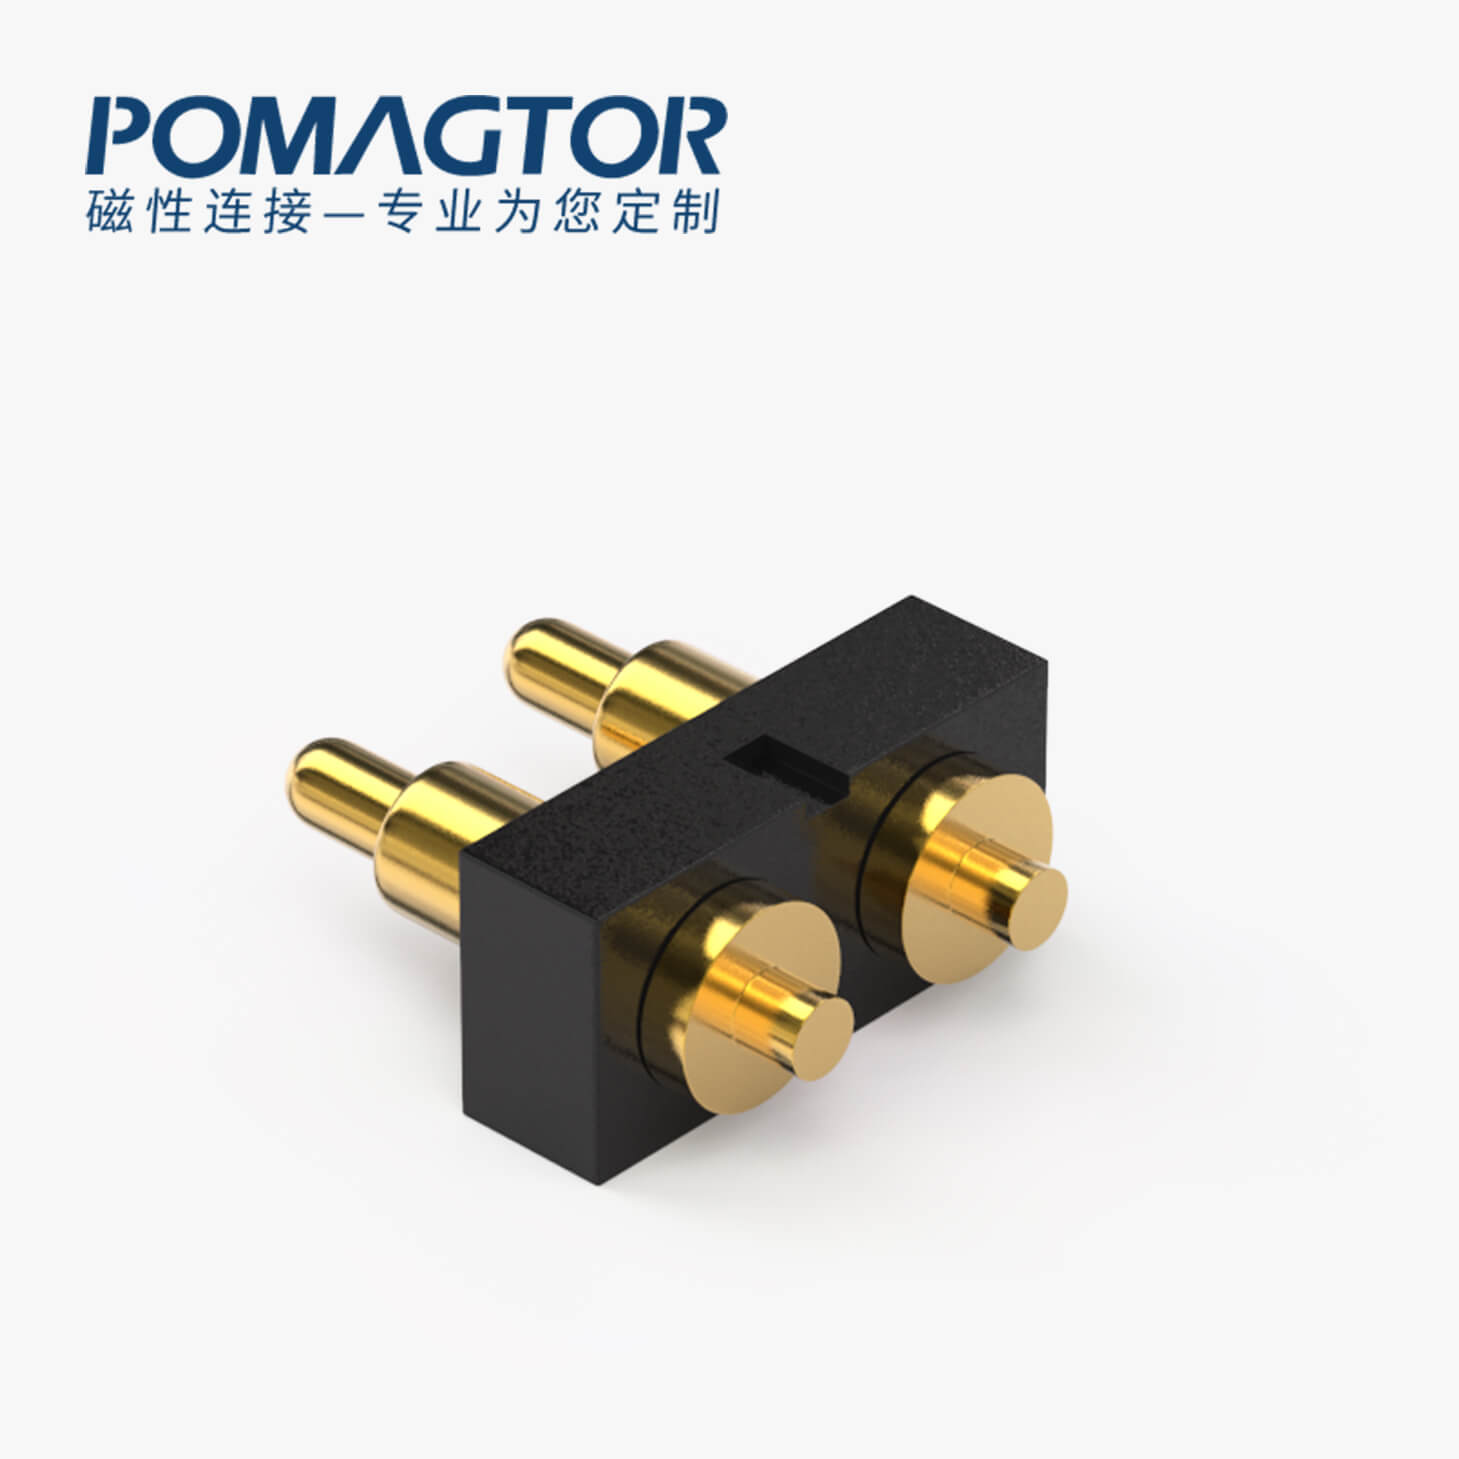 POGO PIN連接器 DIP式：2PIN，電鍍黃銅Au4u，電壓36V，電流1A，工作行程1.0mm:35±20gf，彈力30000次+，工作溫度-30°~85°